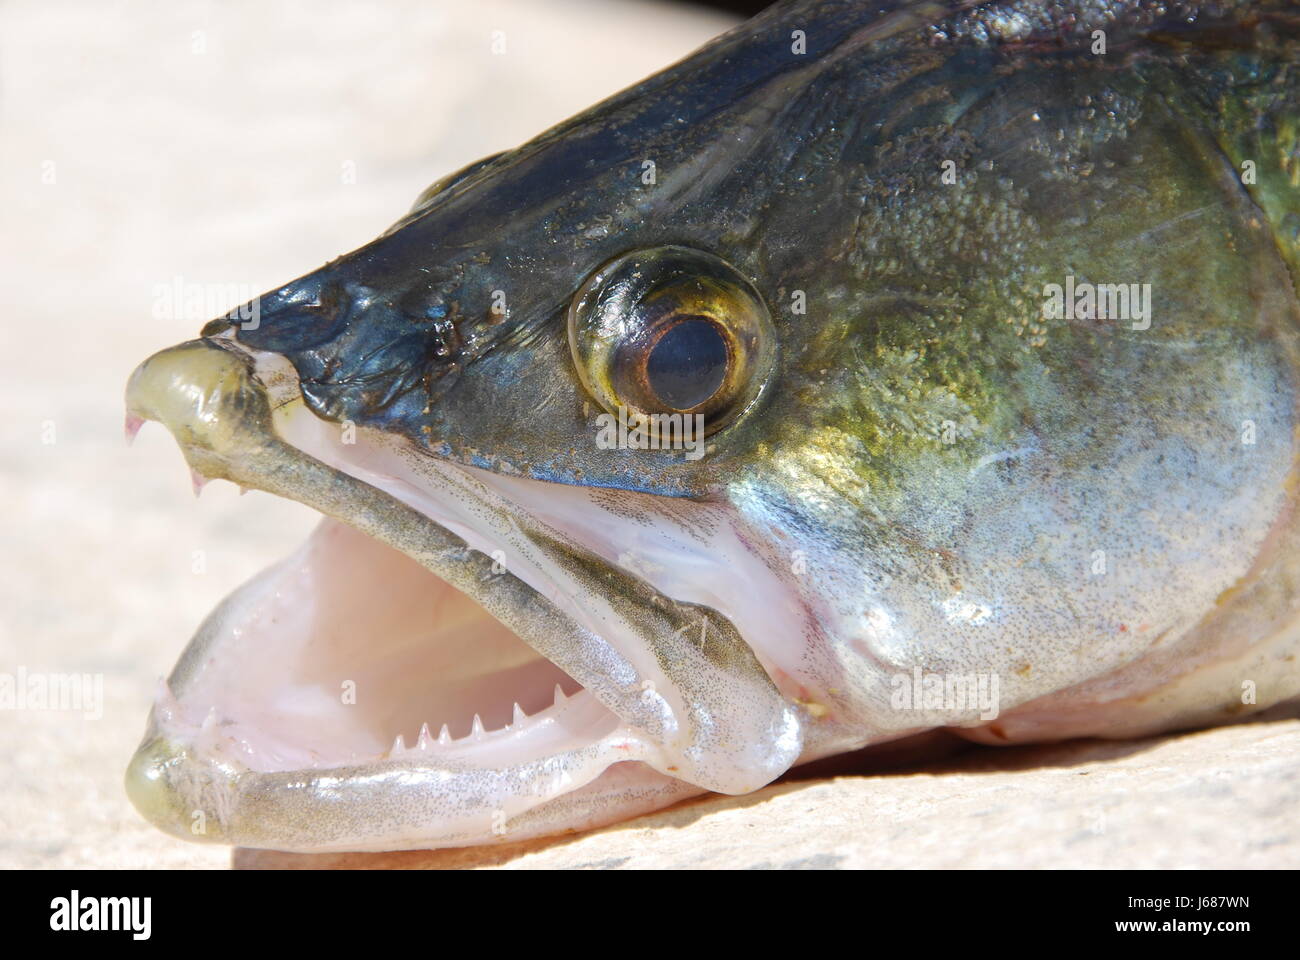 Pesce luccioperca animali animali pesce angolo di Spagna pesci zander testa acanthopterygian Foto Stock